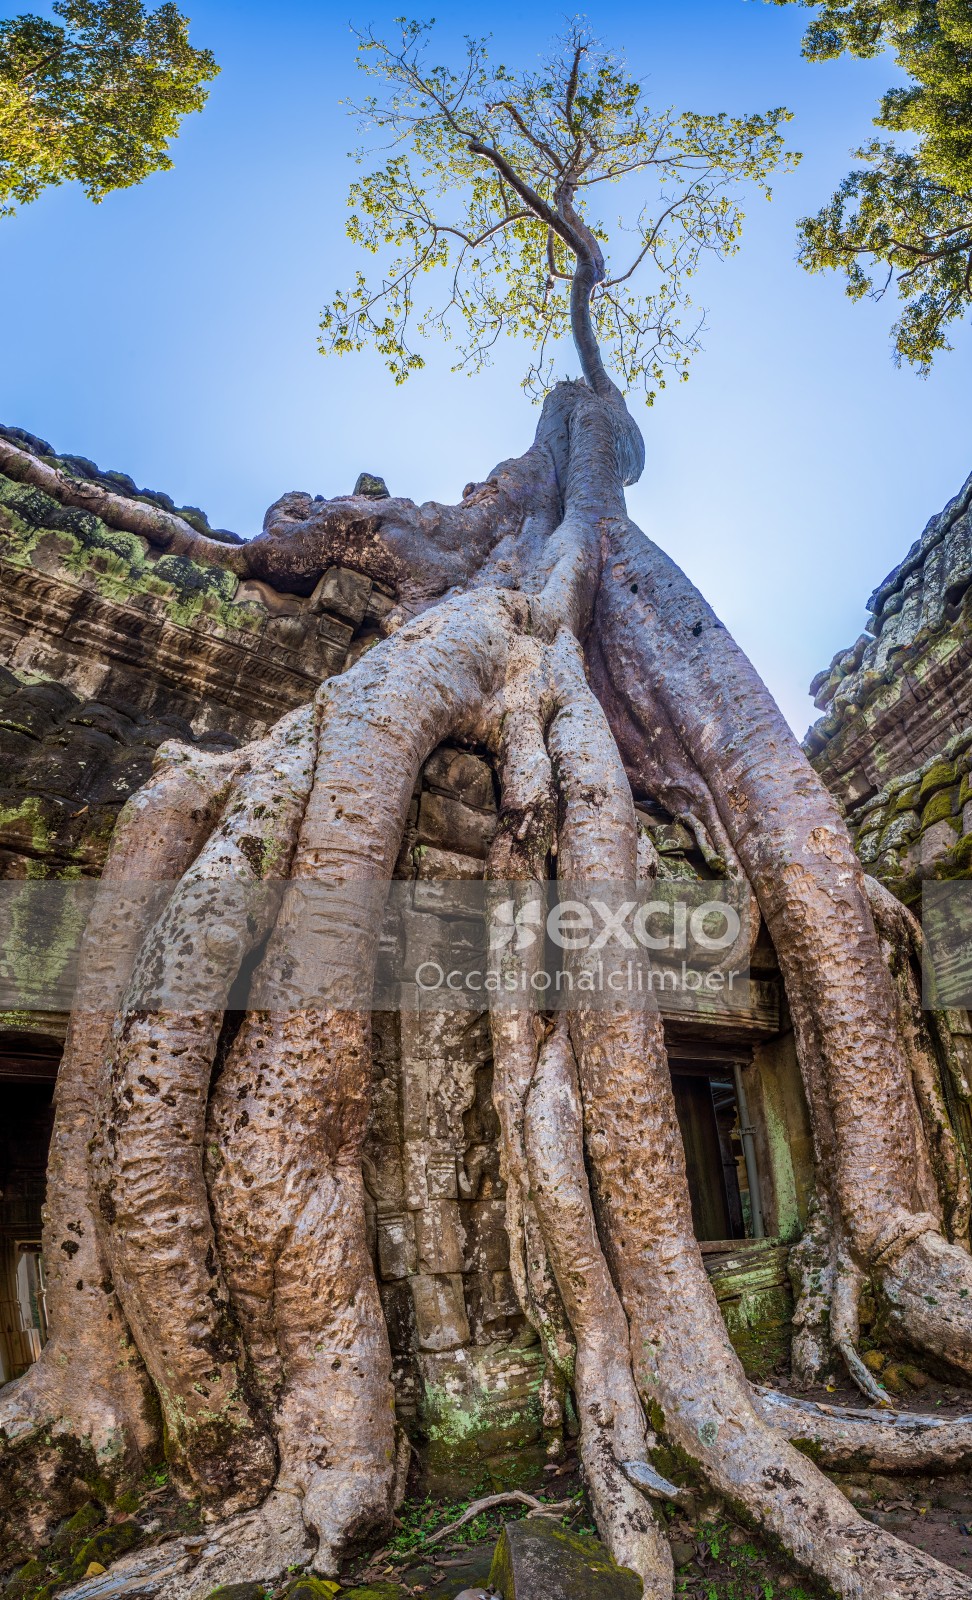 Ta Prohm temple complex, Cambodia